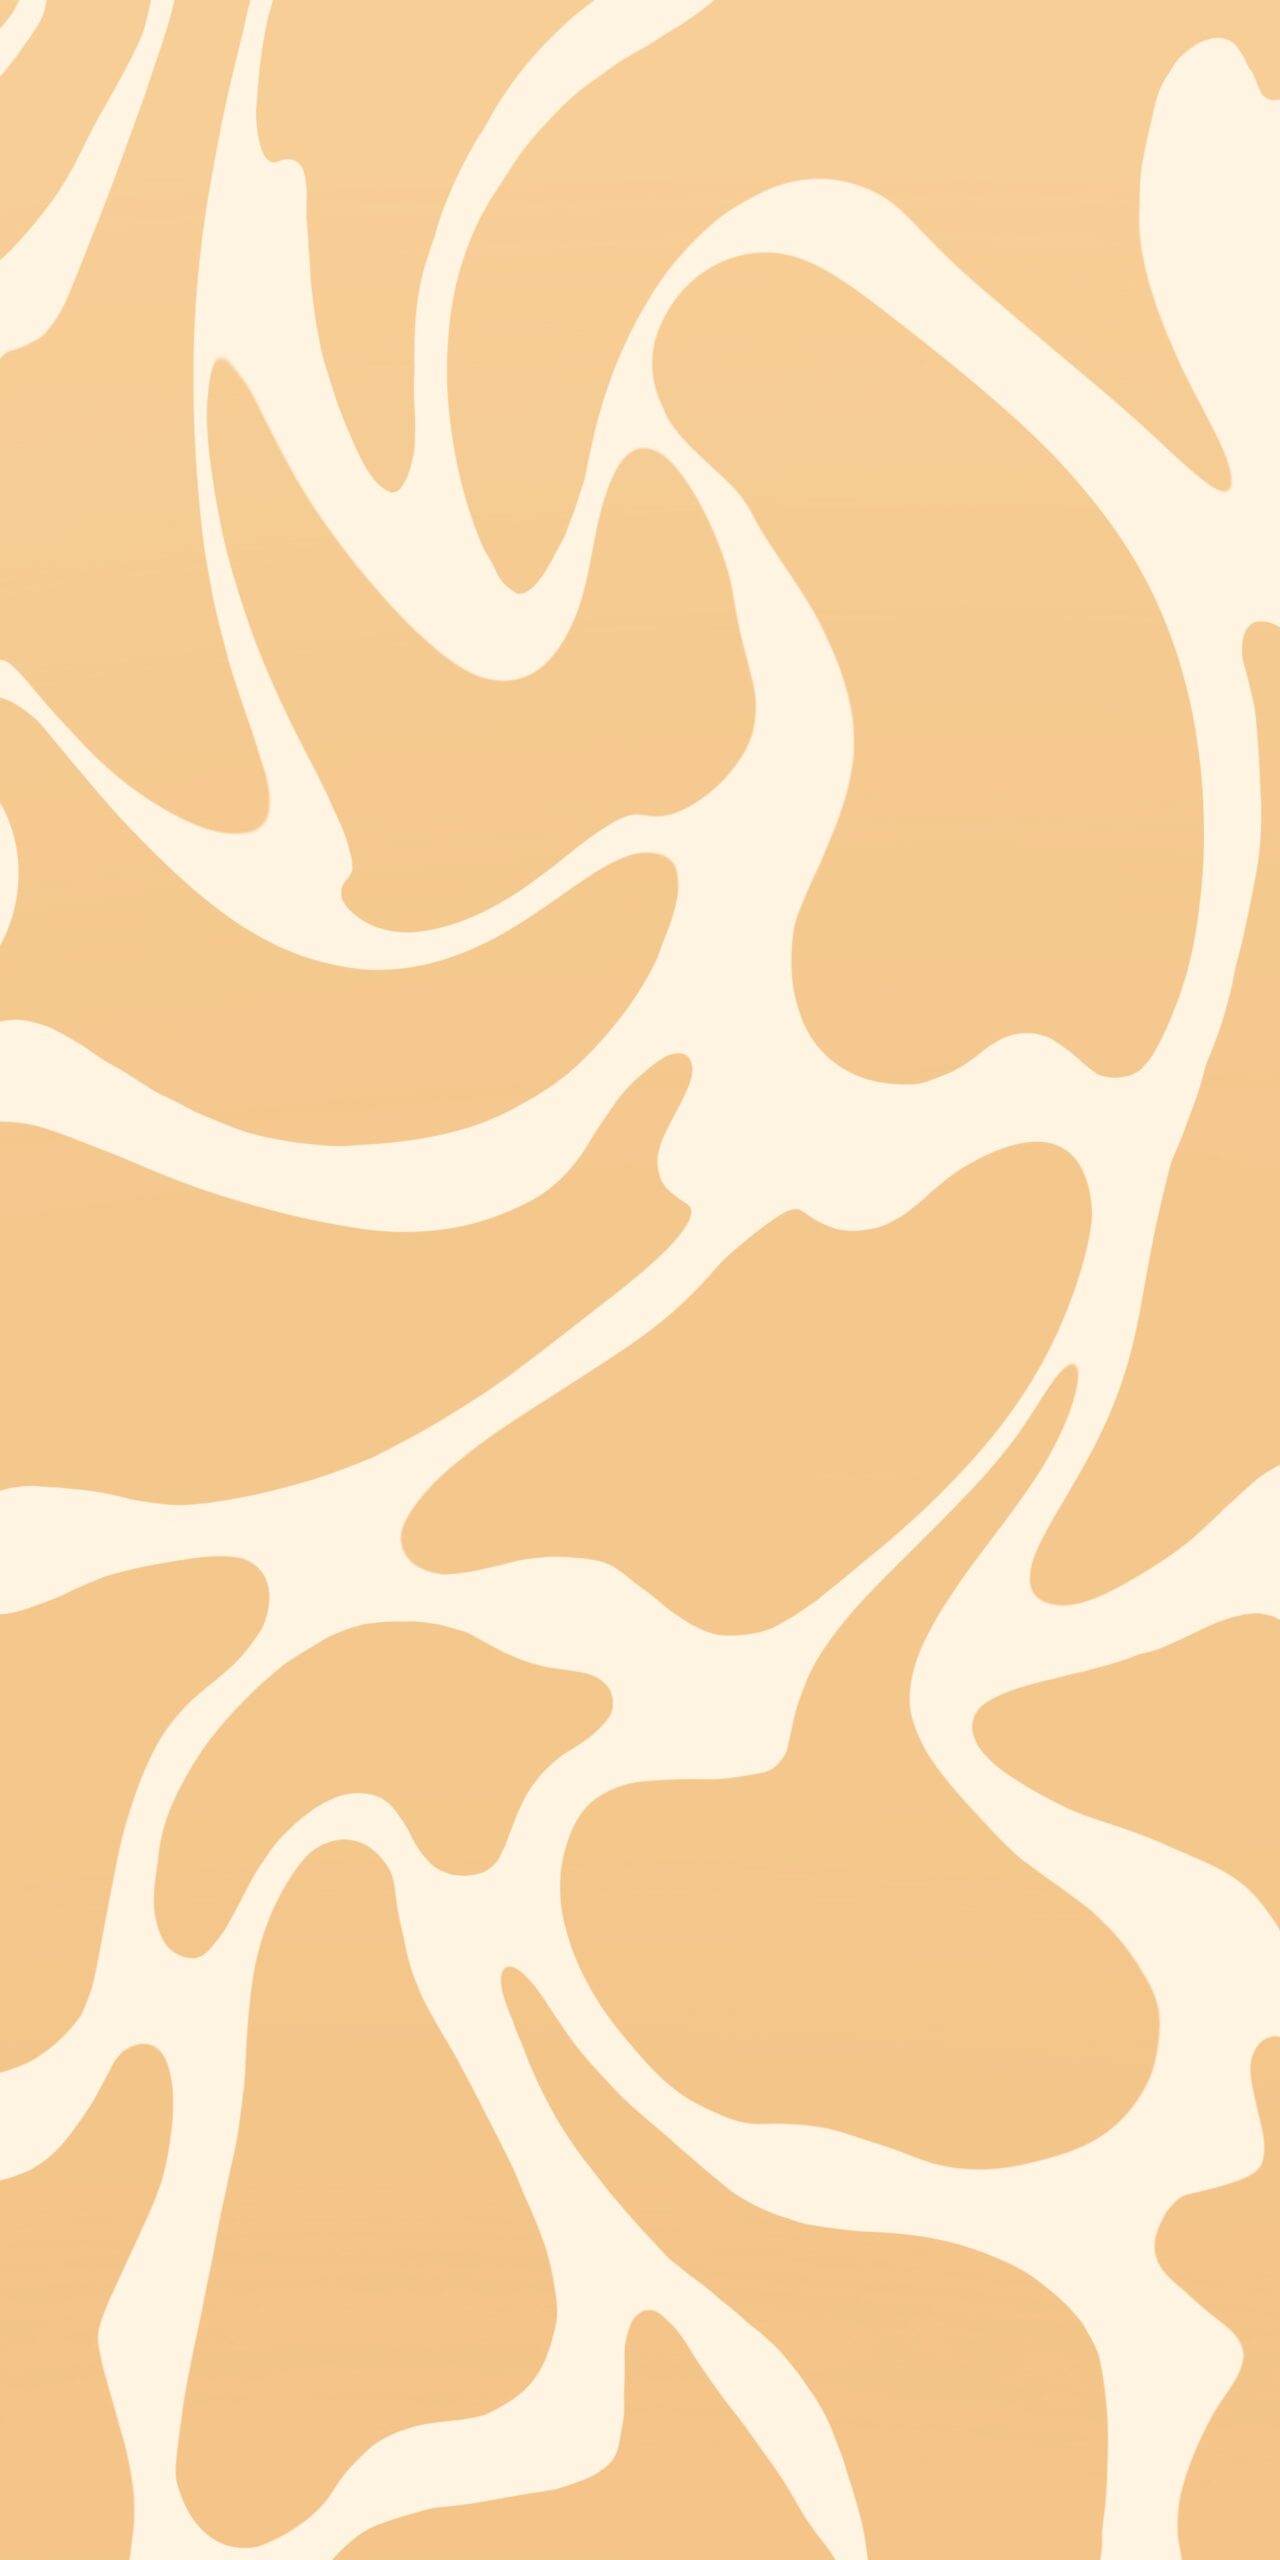 giraffe skin texture wallpaper